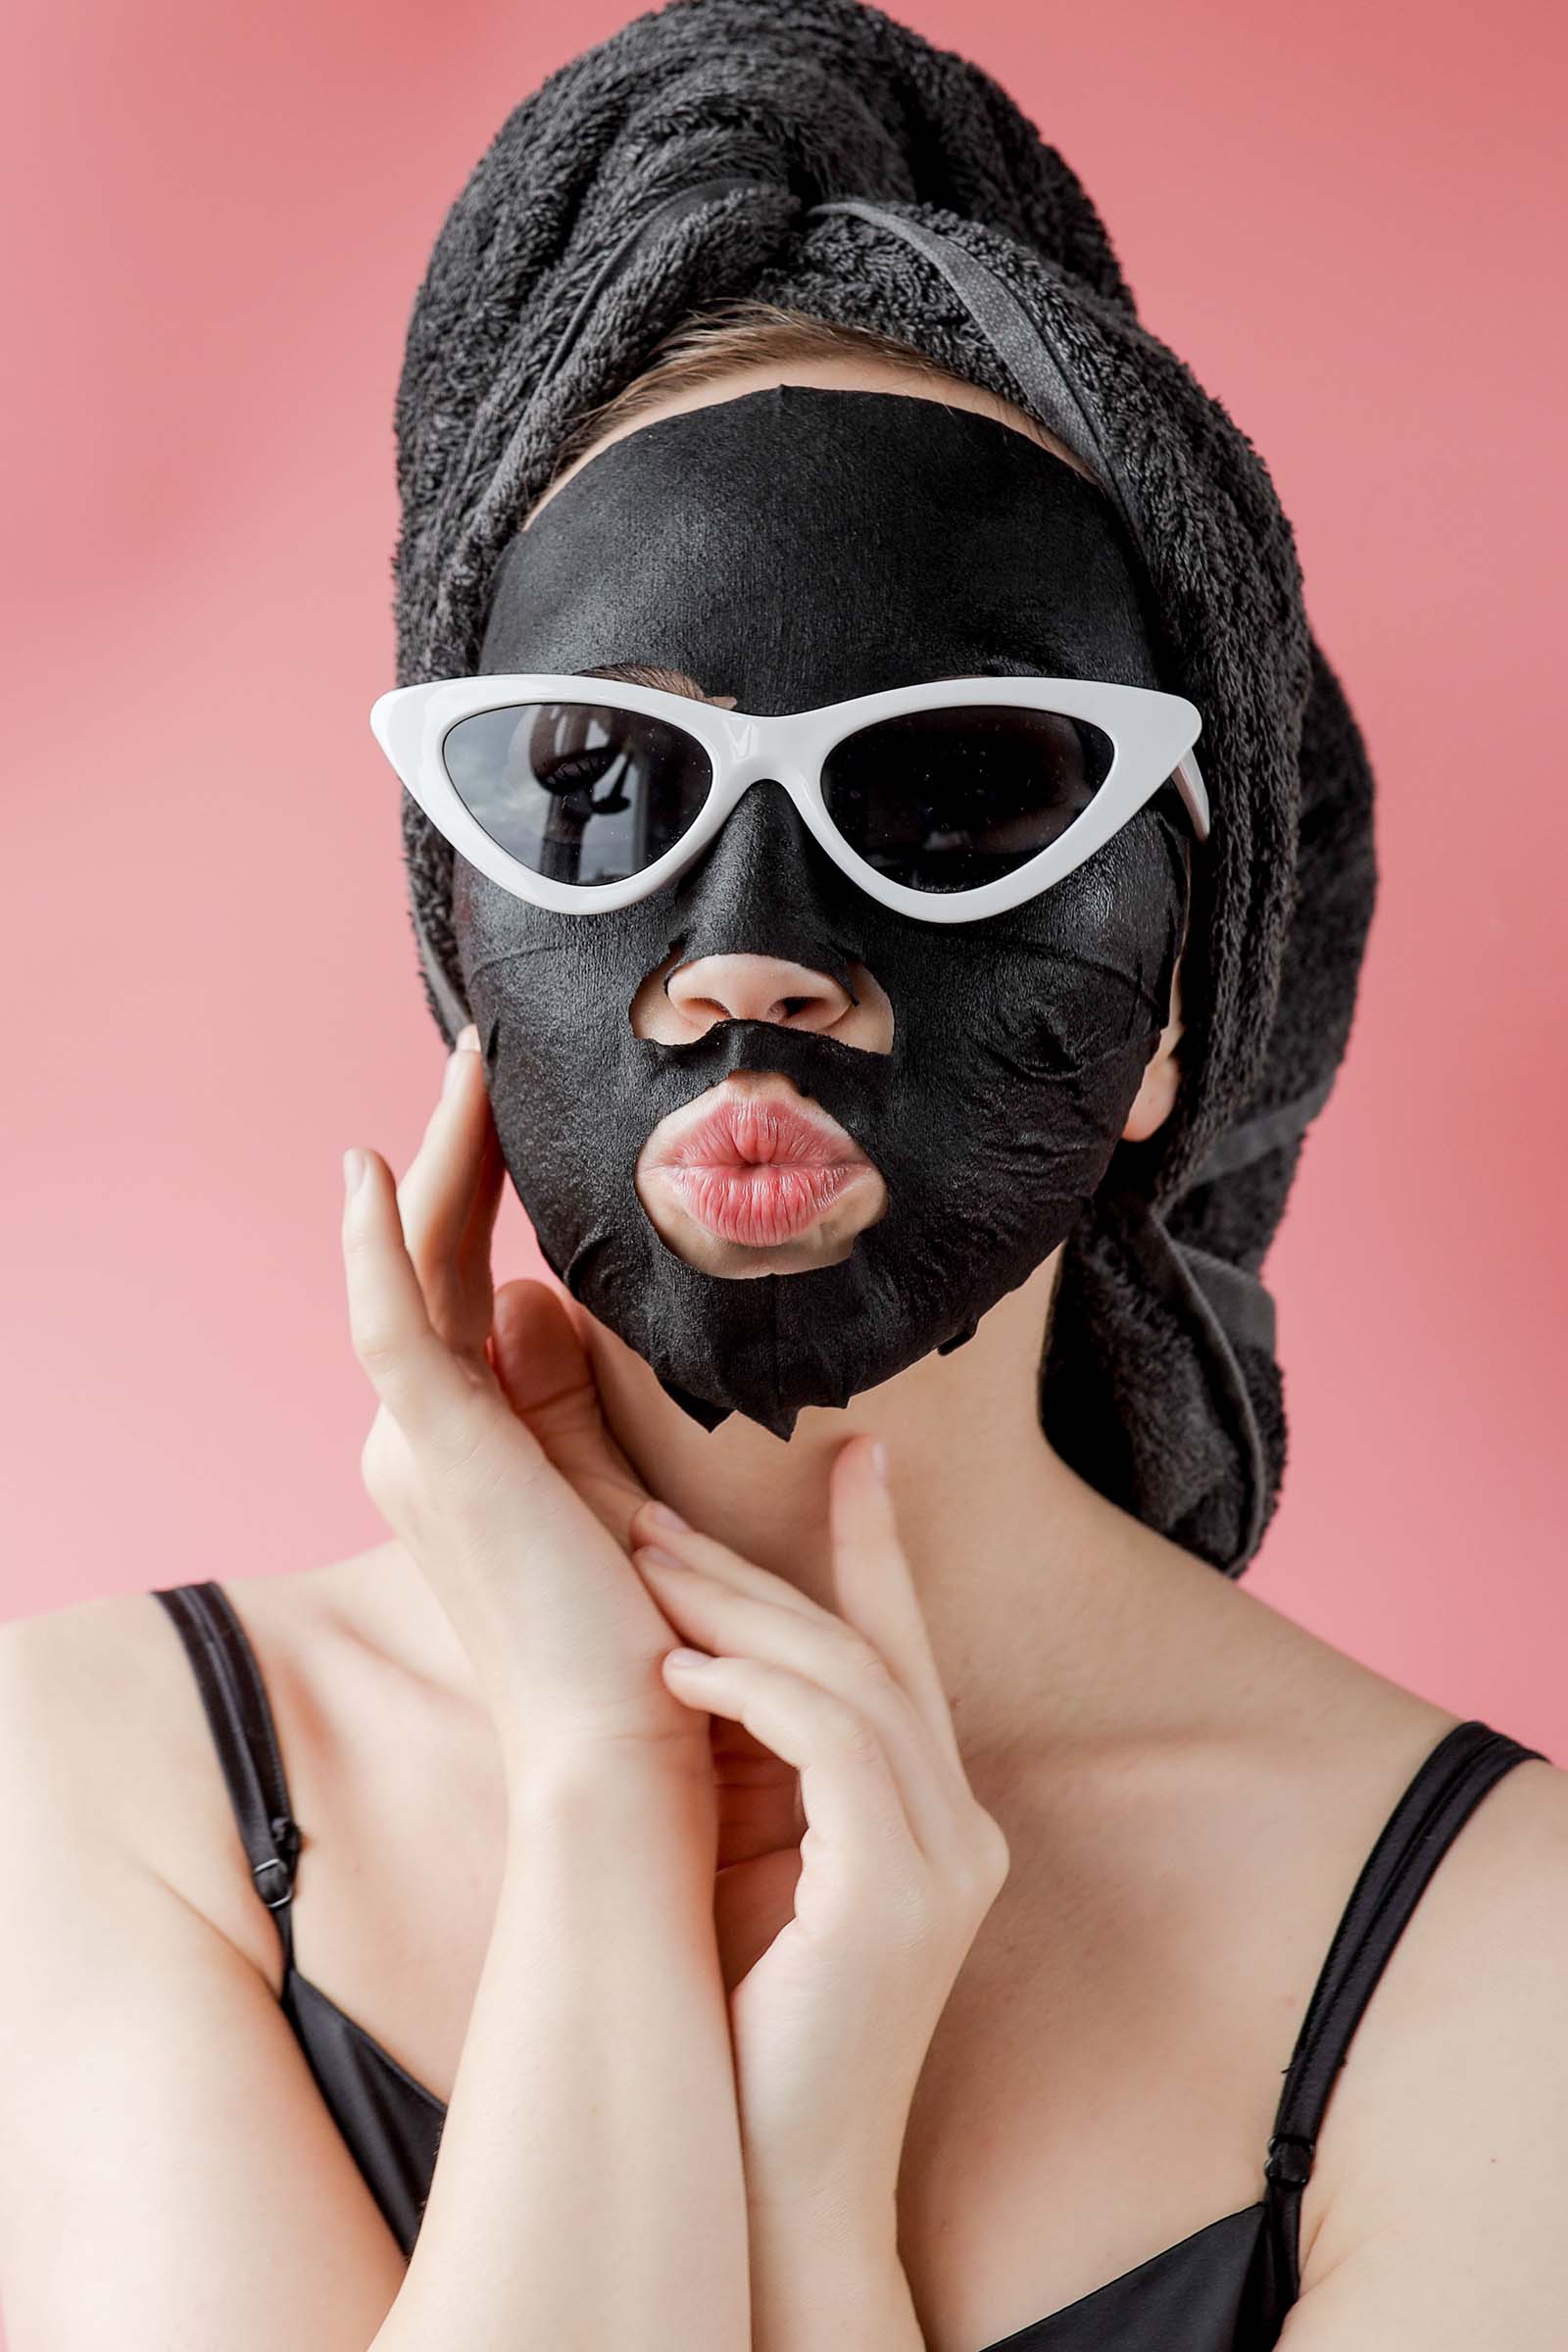 16 лайфхаков, которые сделают тканевую маску для лица намного эффективнее!